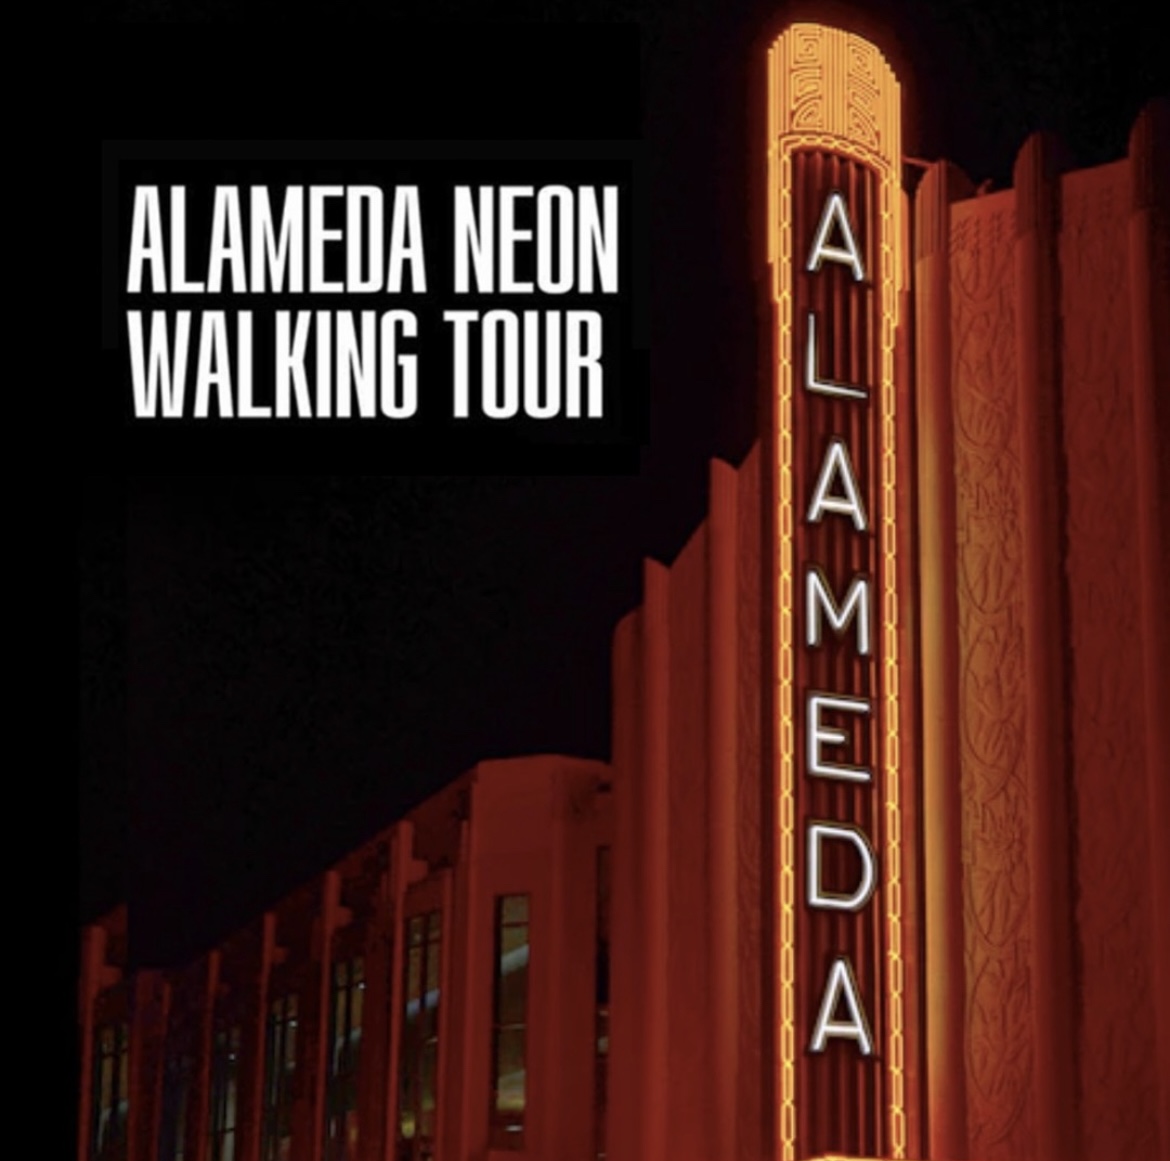 Alameda Neon Walking Tour